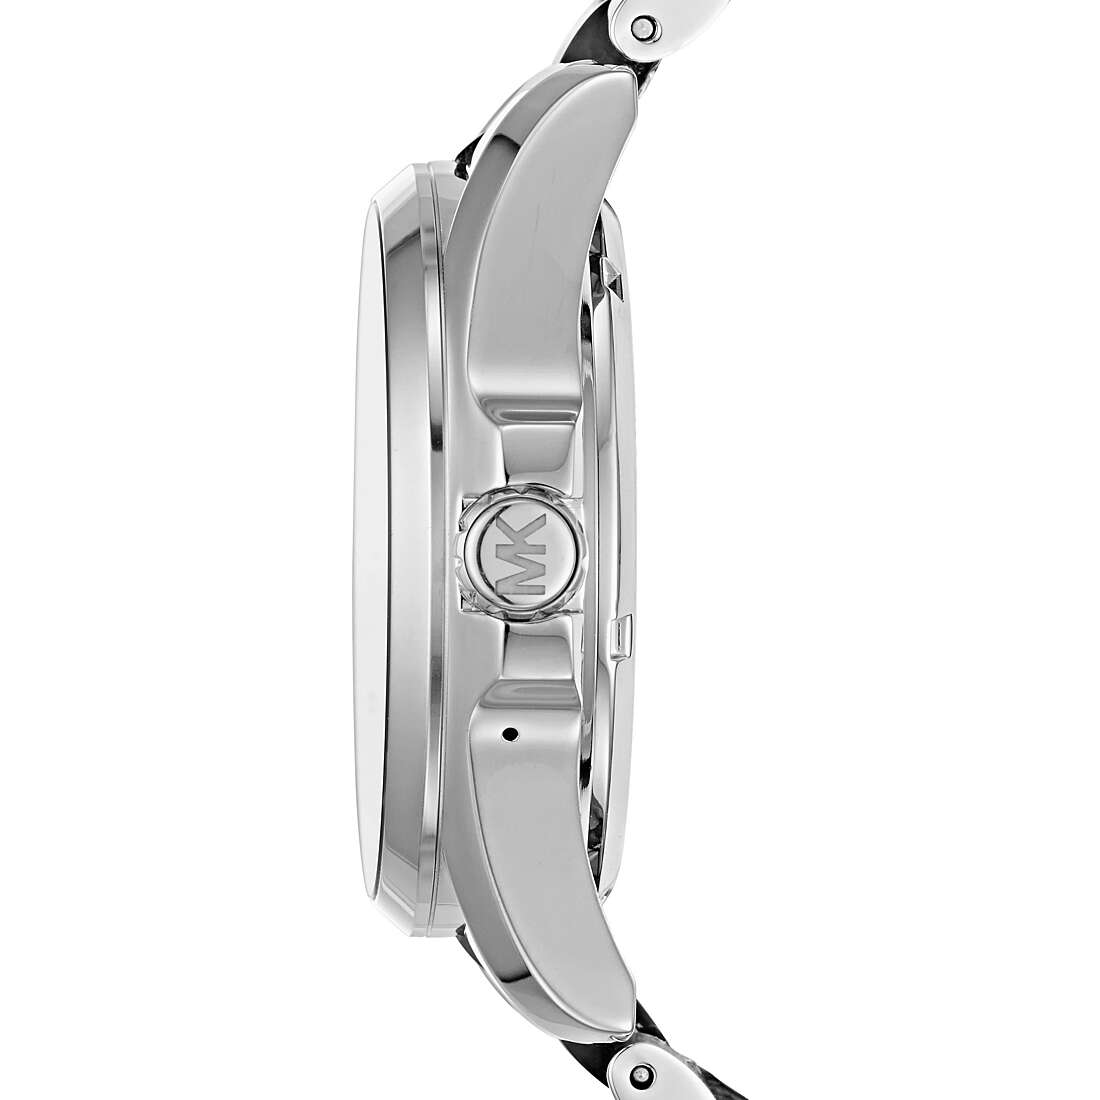 Uhr Smartwatch mann Michael Kors Bradshaw MKT5000